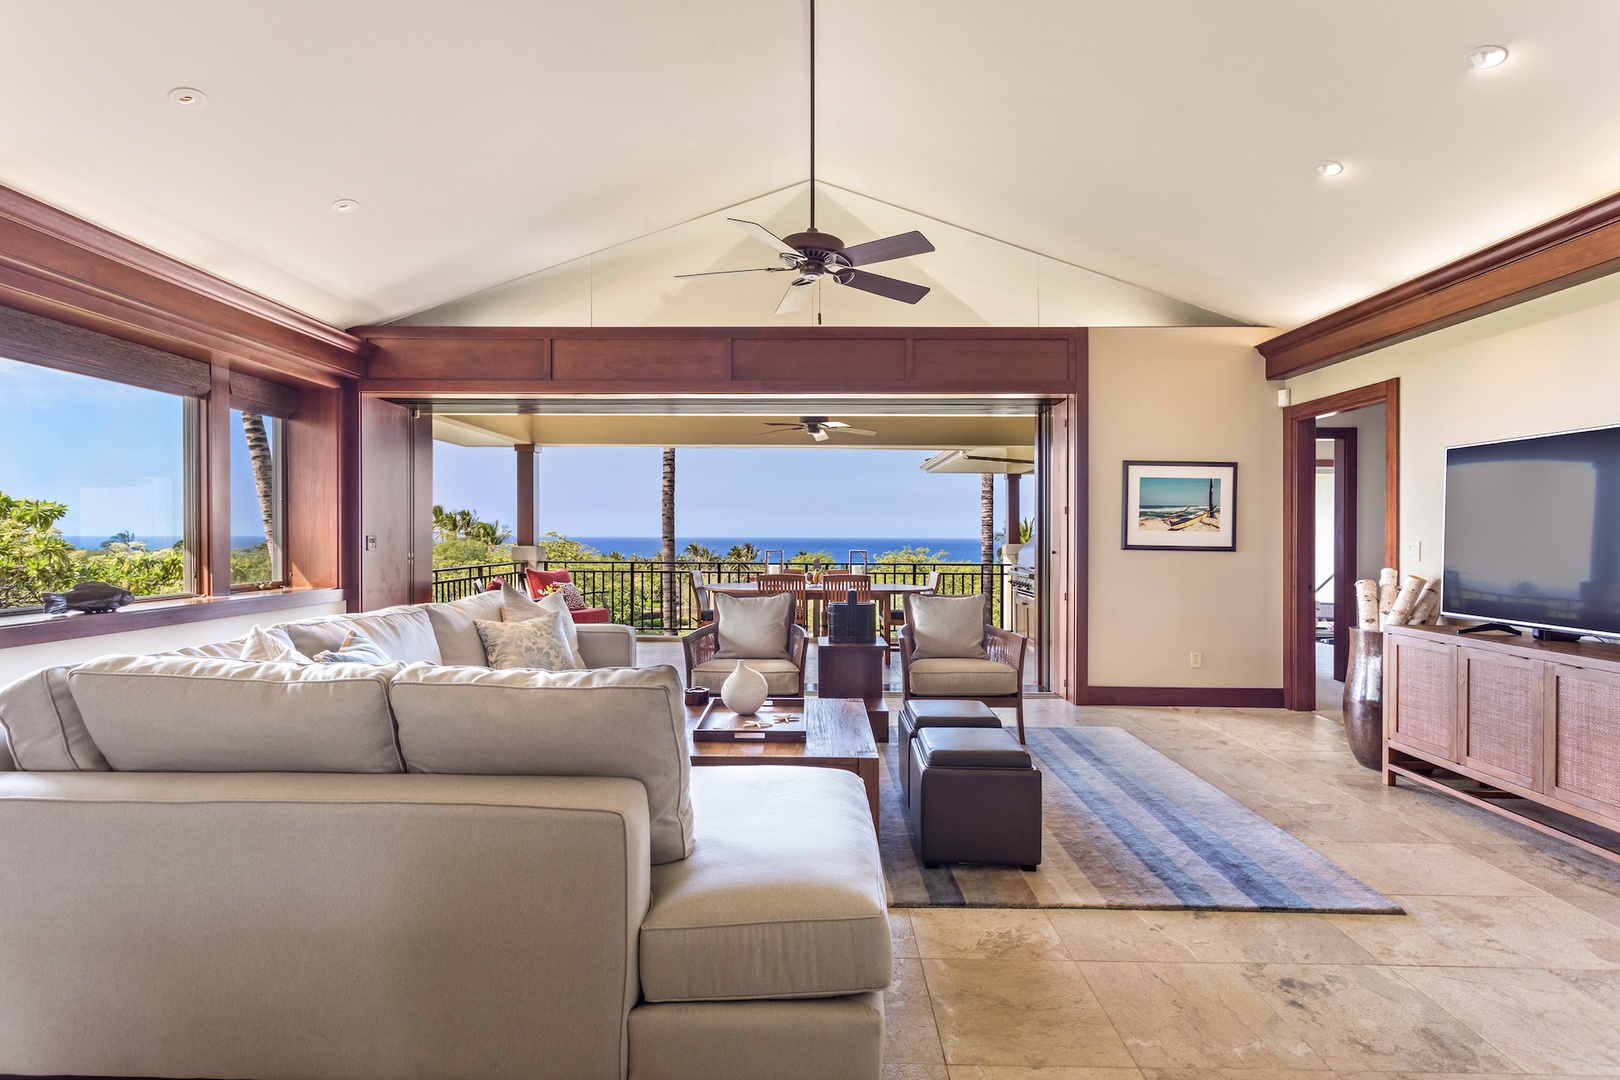 Kailua Kona Vacation Rentals, 3BD Hainoa Villa (2901D) at Four Seasons Resort at Hualalai - Living area with ample seating and ocean views.